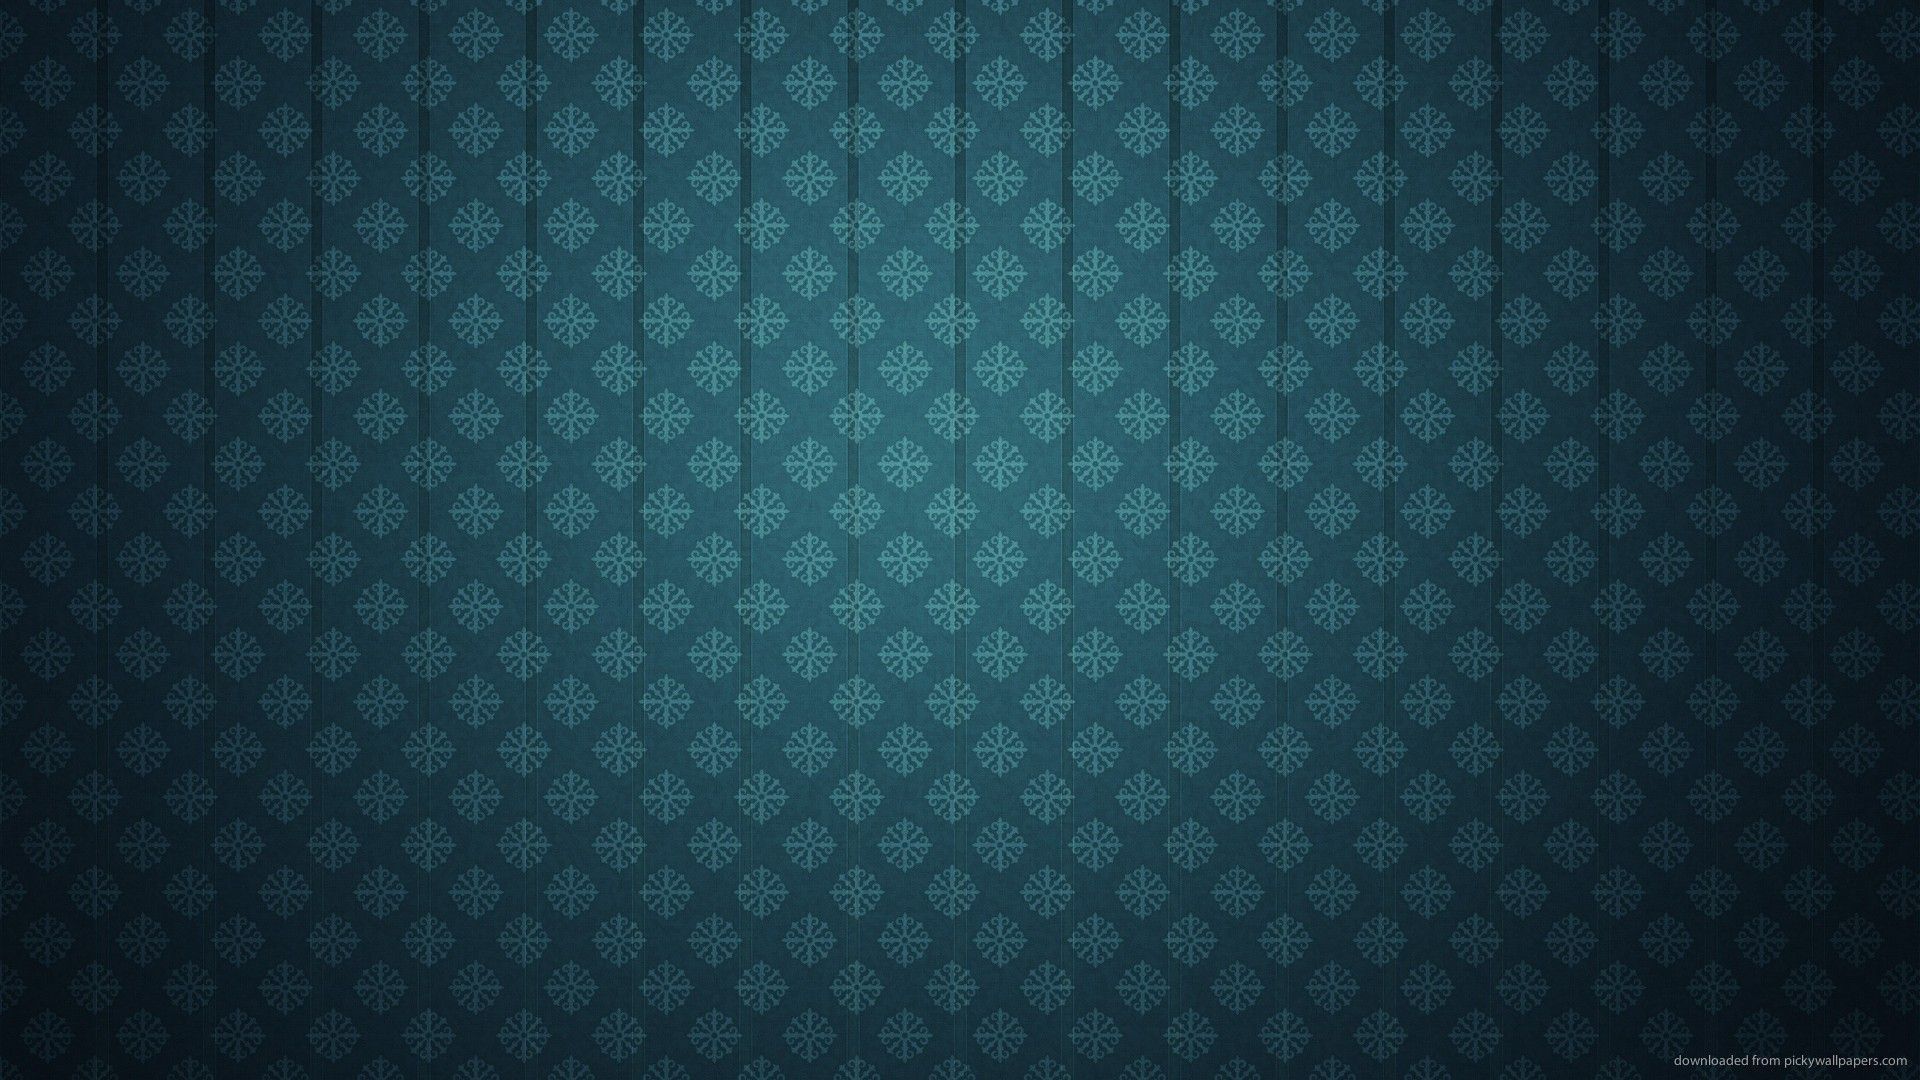 Download 1920x1080 Dark Blue Rhimbus Pattern Wallpaper